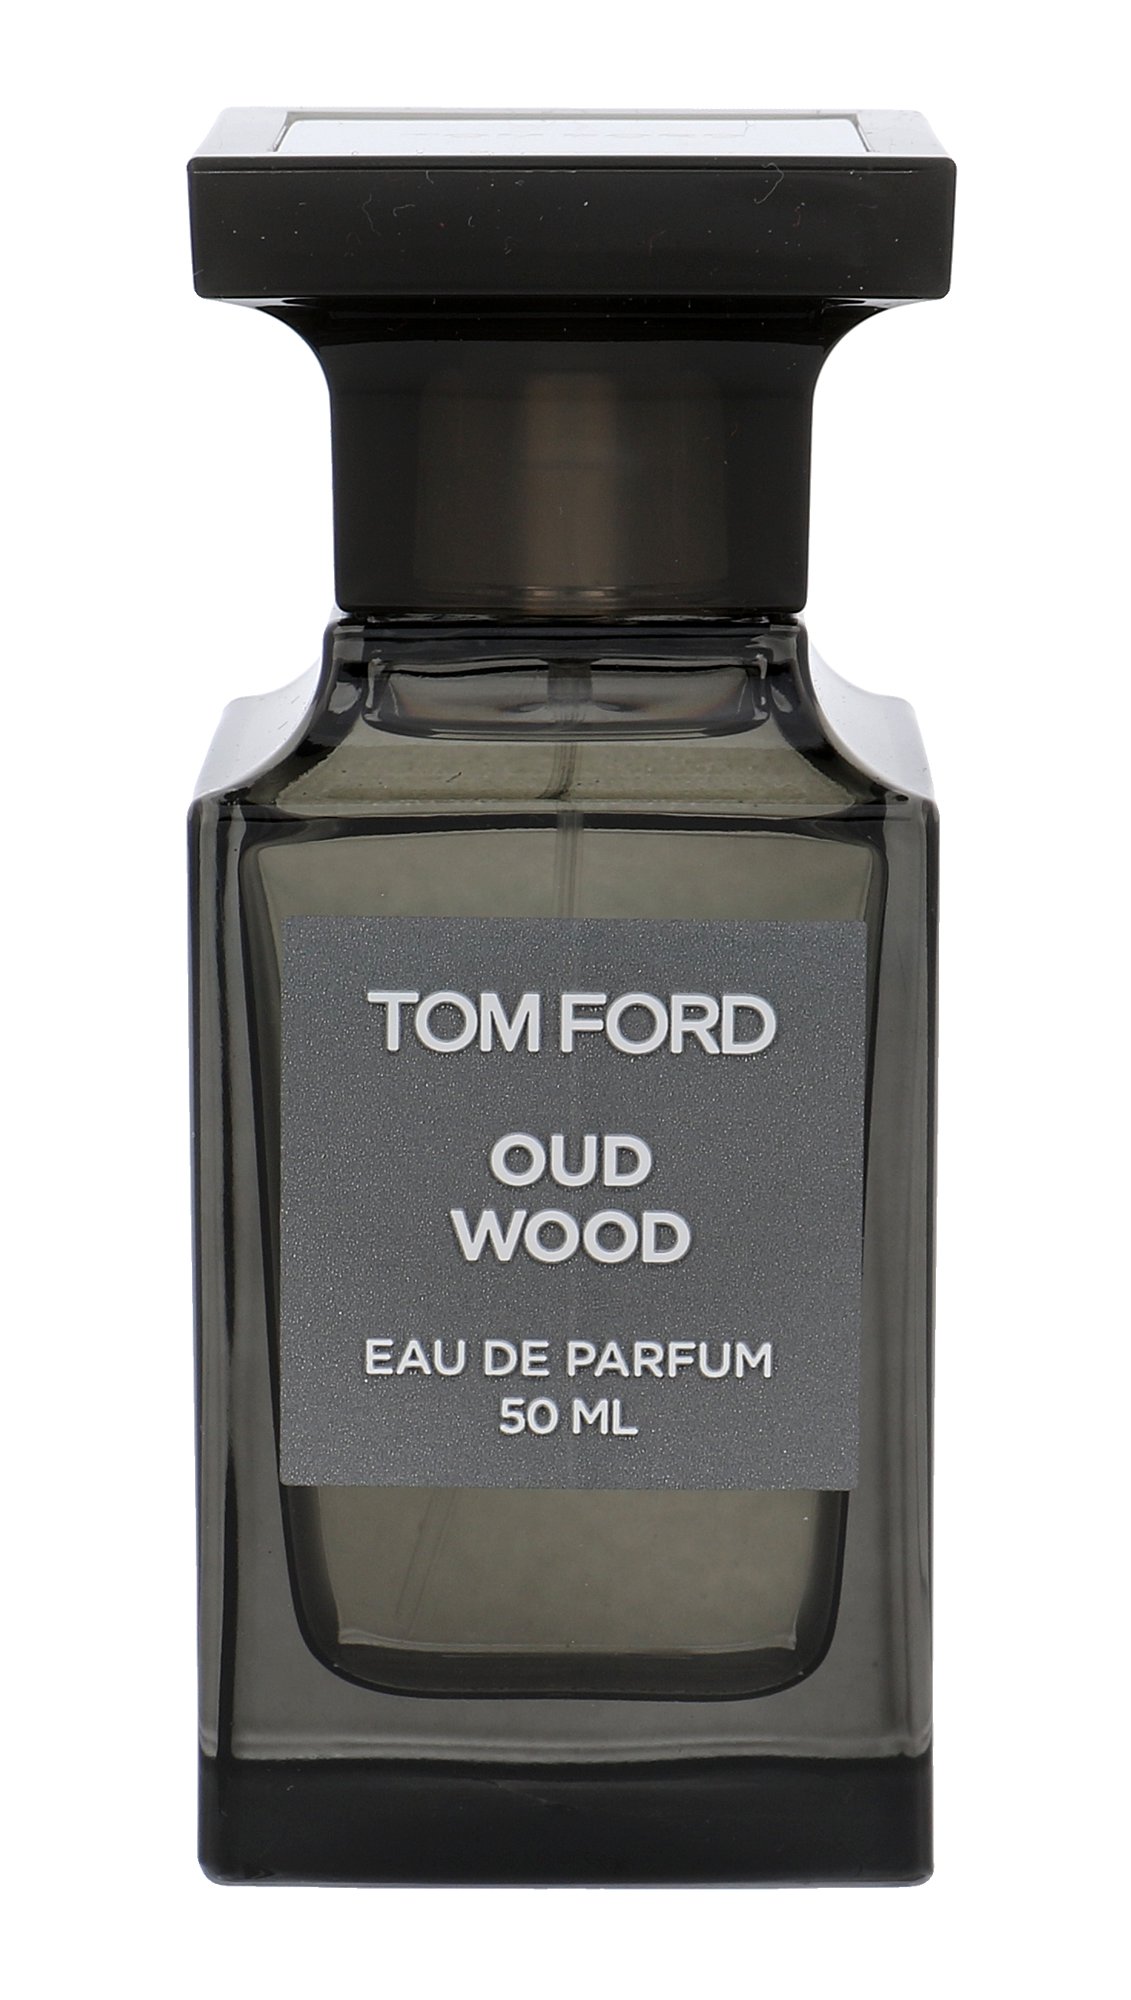 TOM FORD Oud Wood, edp 50ml - Teszter